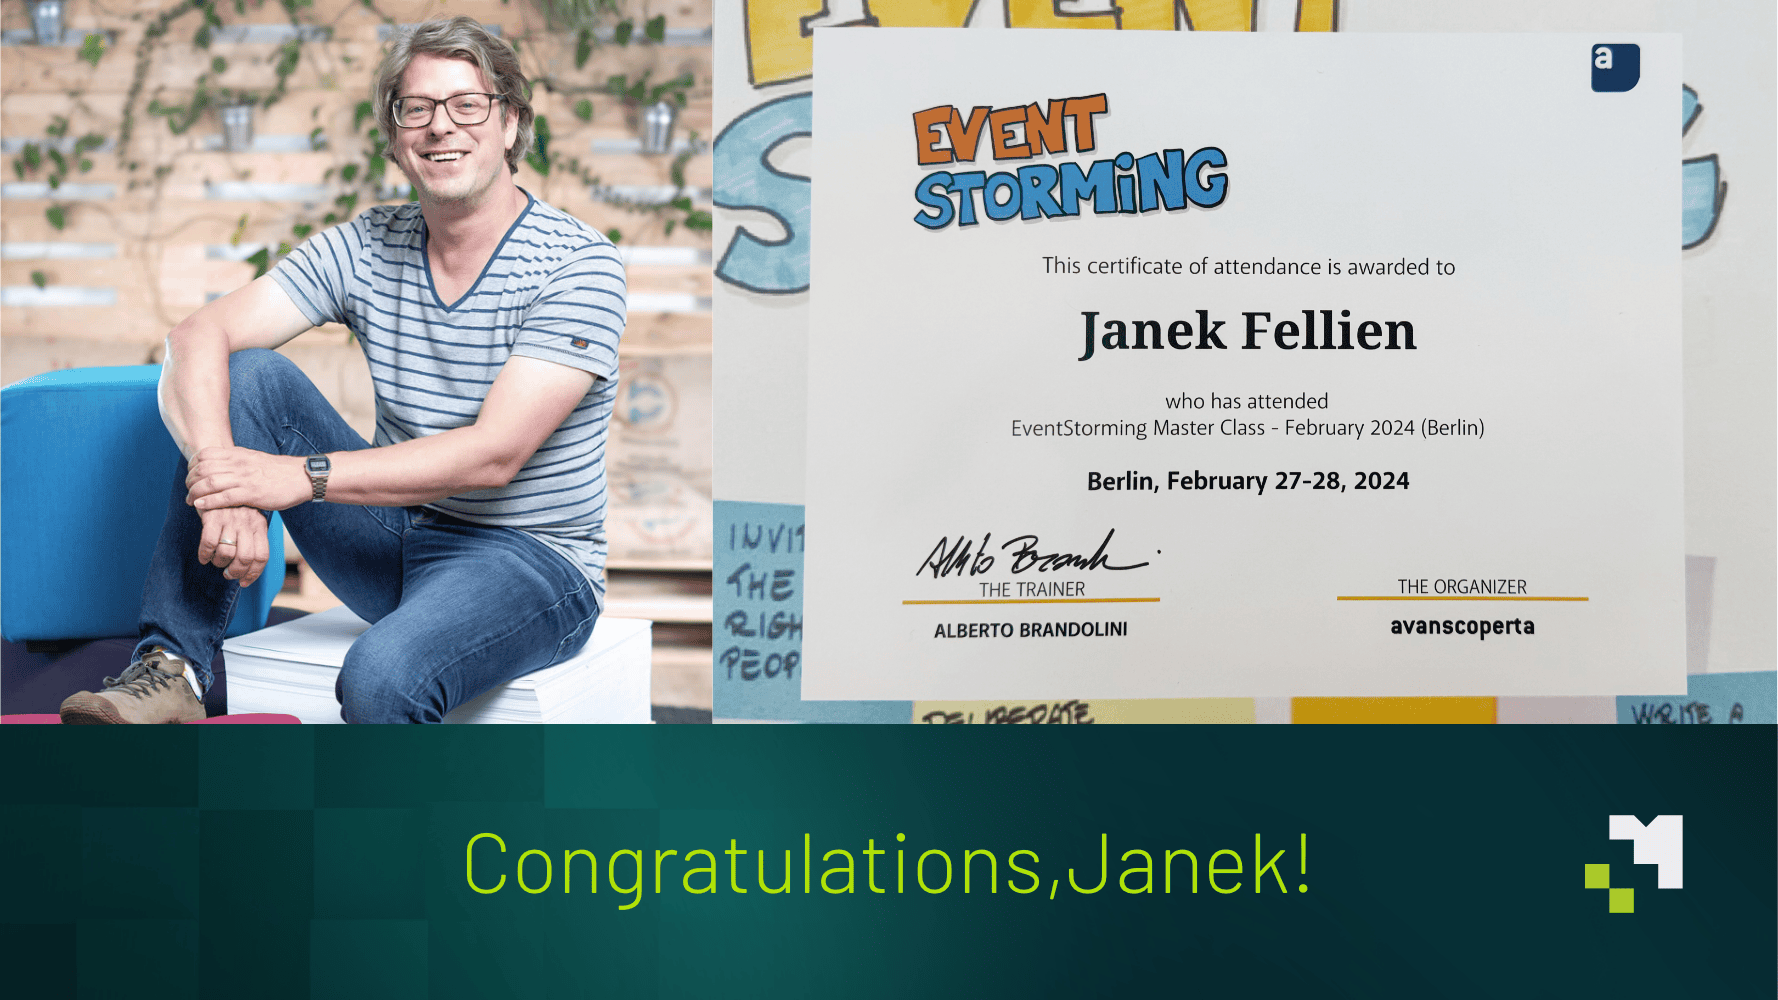 Herzlichen Glückwunsch, Janek!